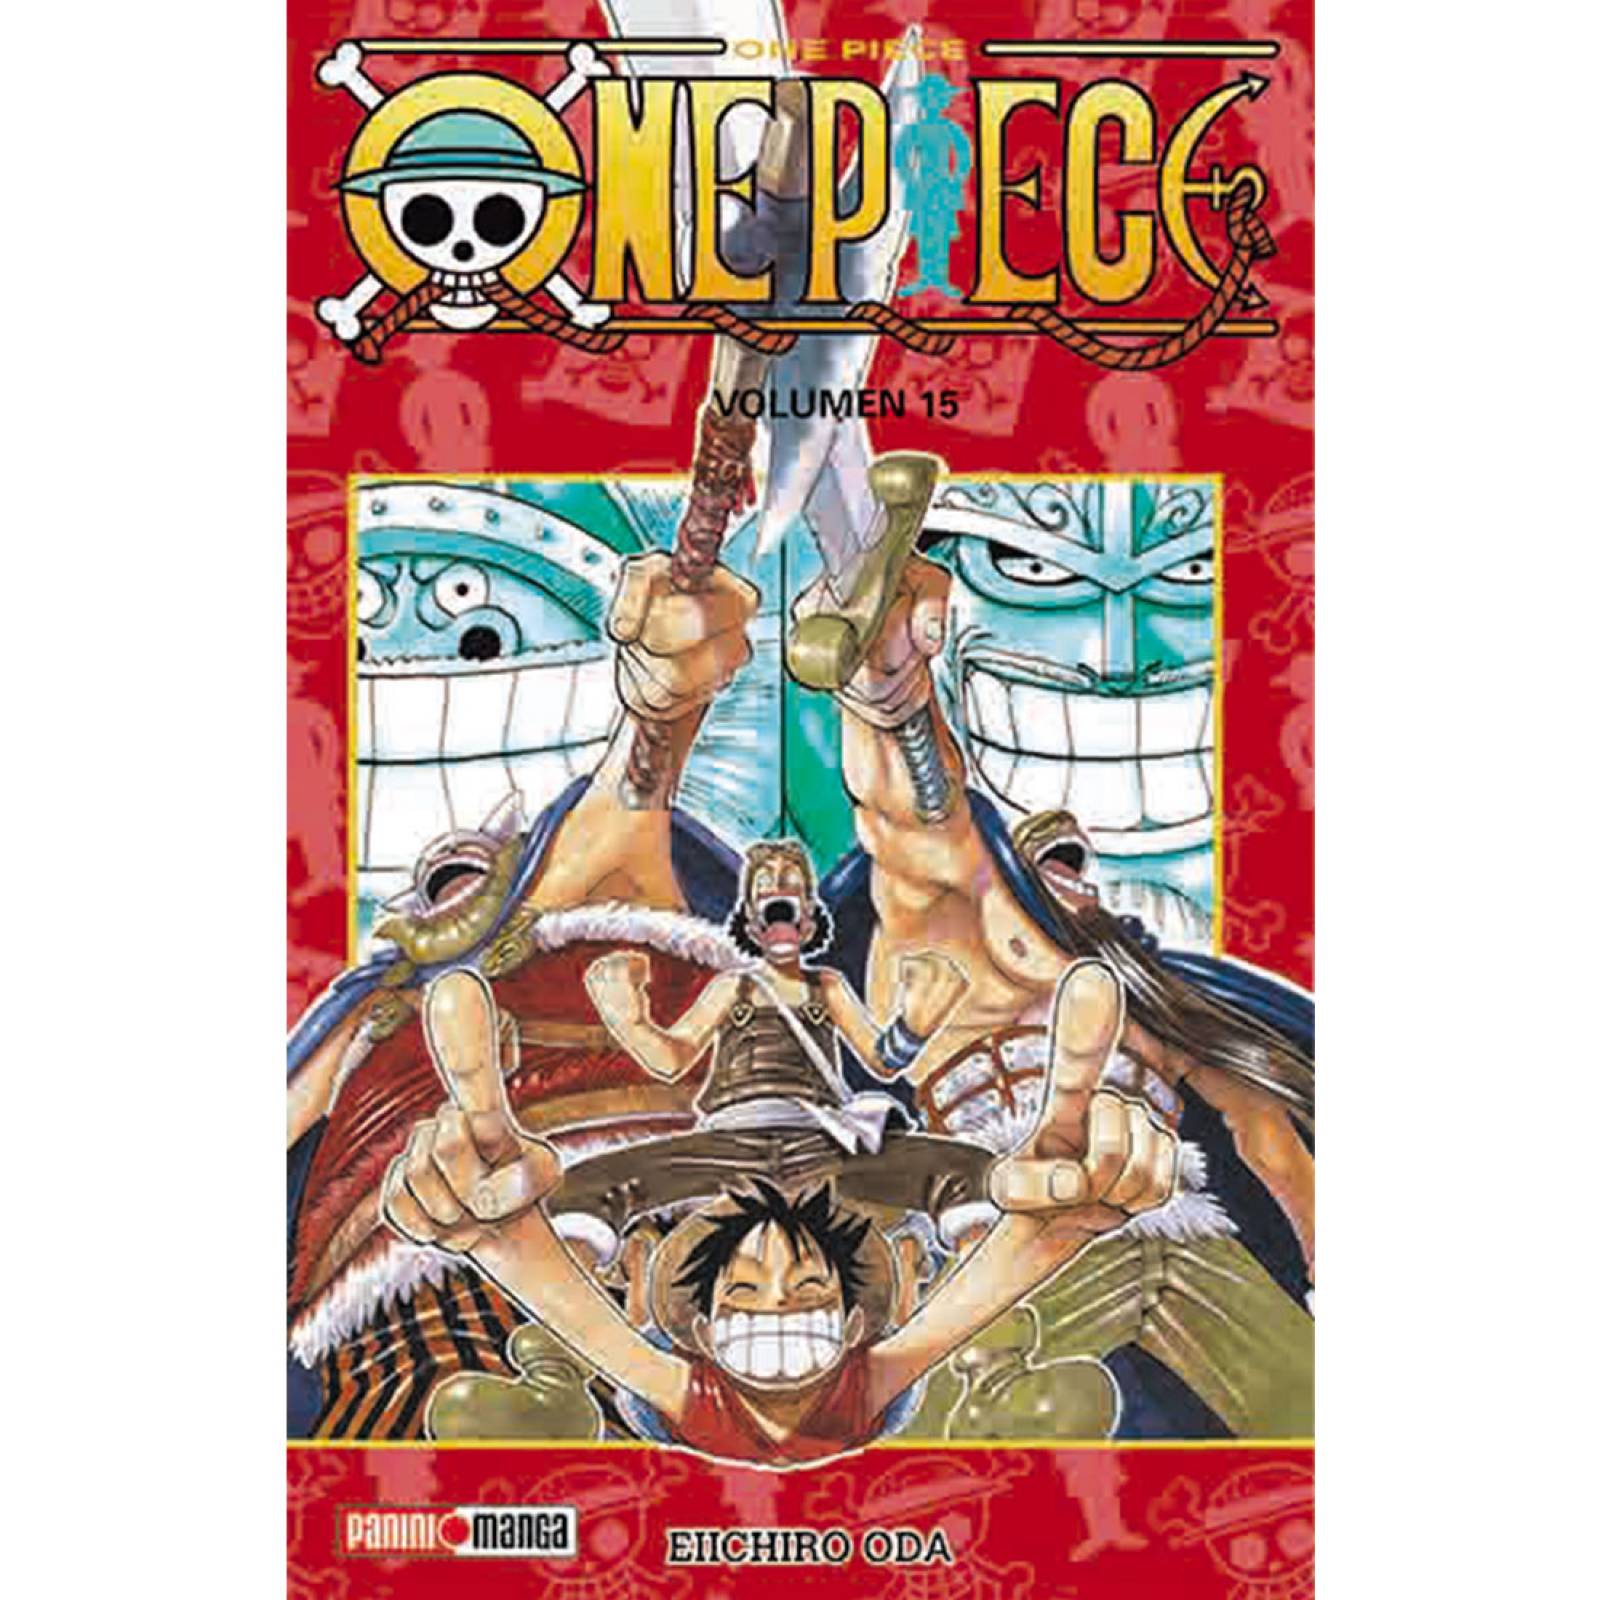 Panini Manga One Piece  Eiichir? Oda Volumen 15